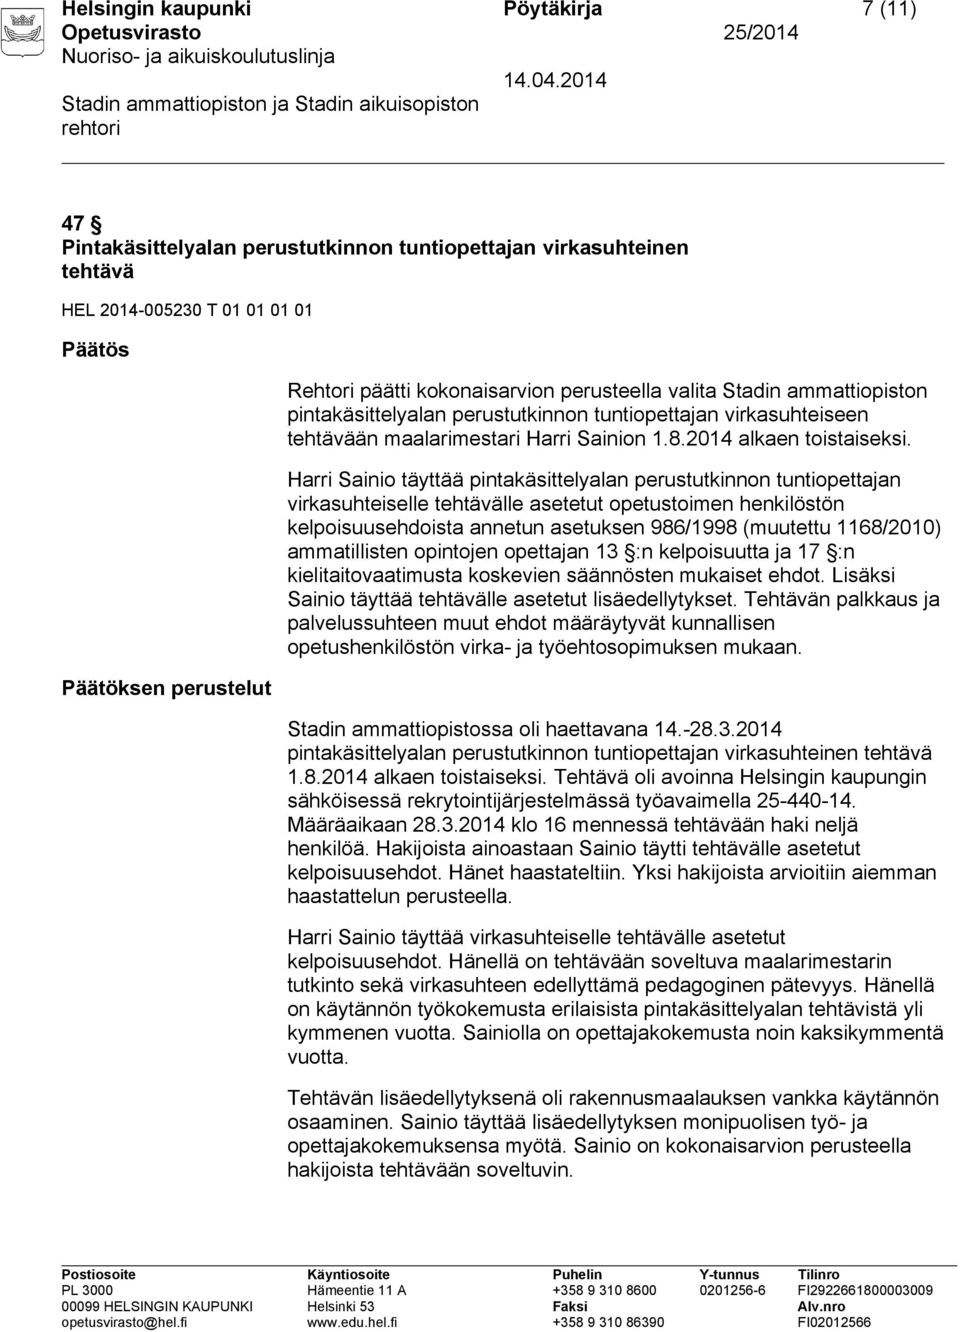 Harri Sainio täyttää pintakäsittelyalan perustutkinnon tuntiopettajan virkasuhteiselle tehtävälle asetetut opetustoimen henkilöstön kelpoisuusehdoista annetun asetuksen 986/1998 (muutettu 1168/2010)